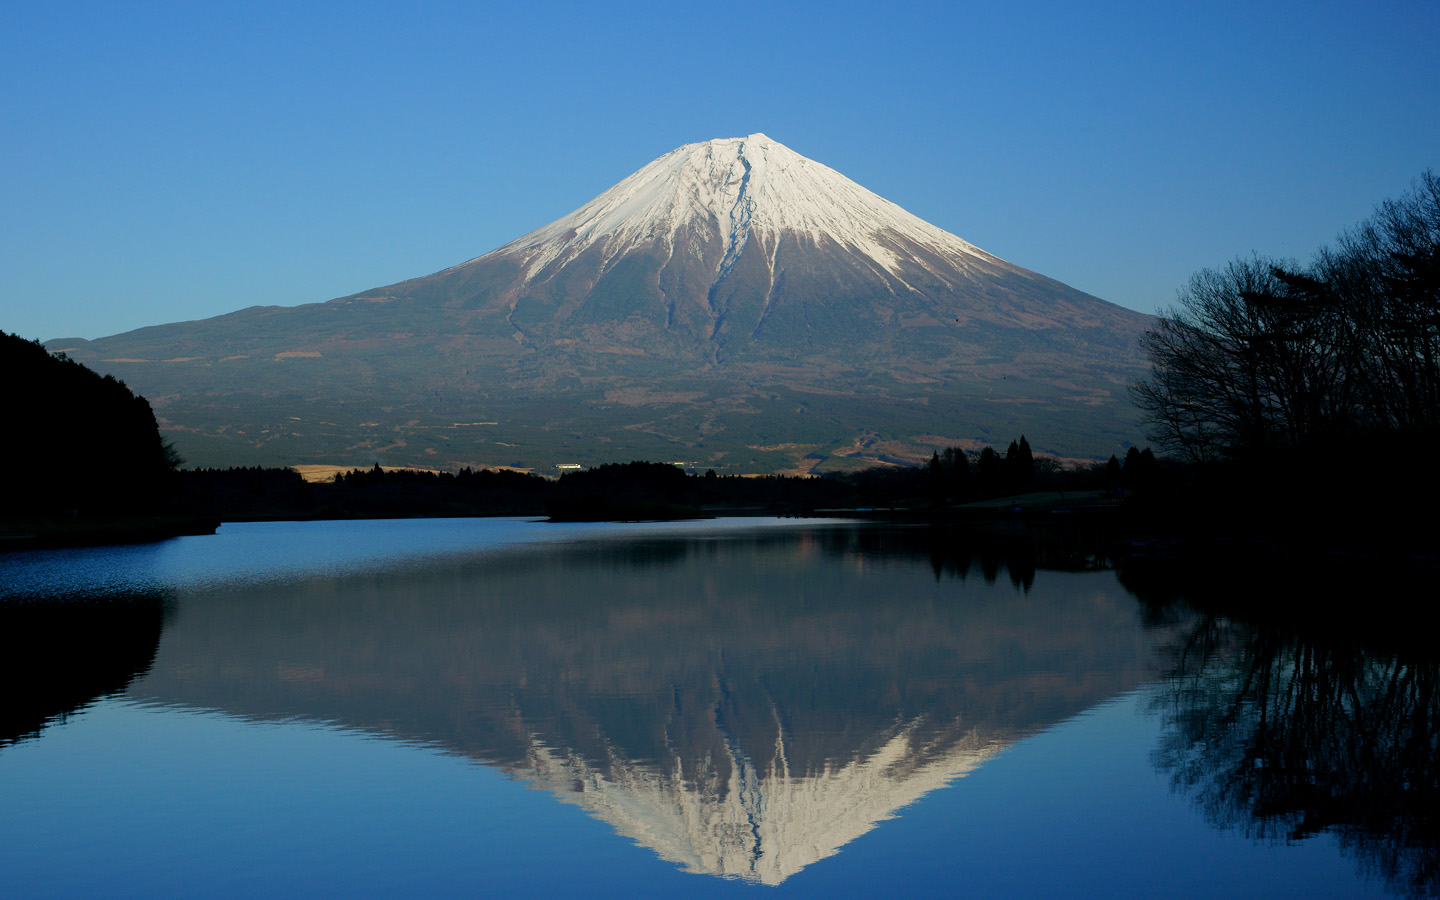 壁紙 富士山の壁紙 世界遺産 1440x900 壁紙 富士山の壁紙 絶景世界遺産 Naver まとめ